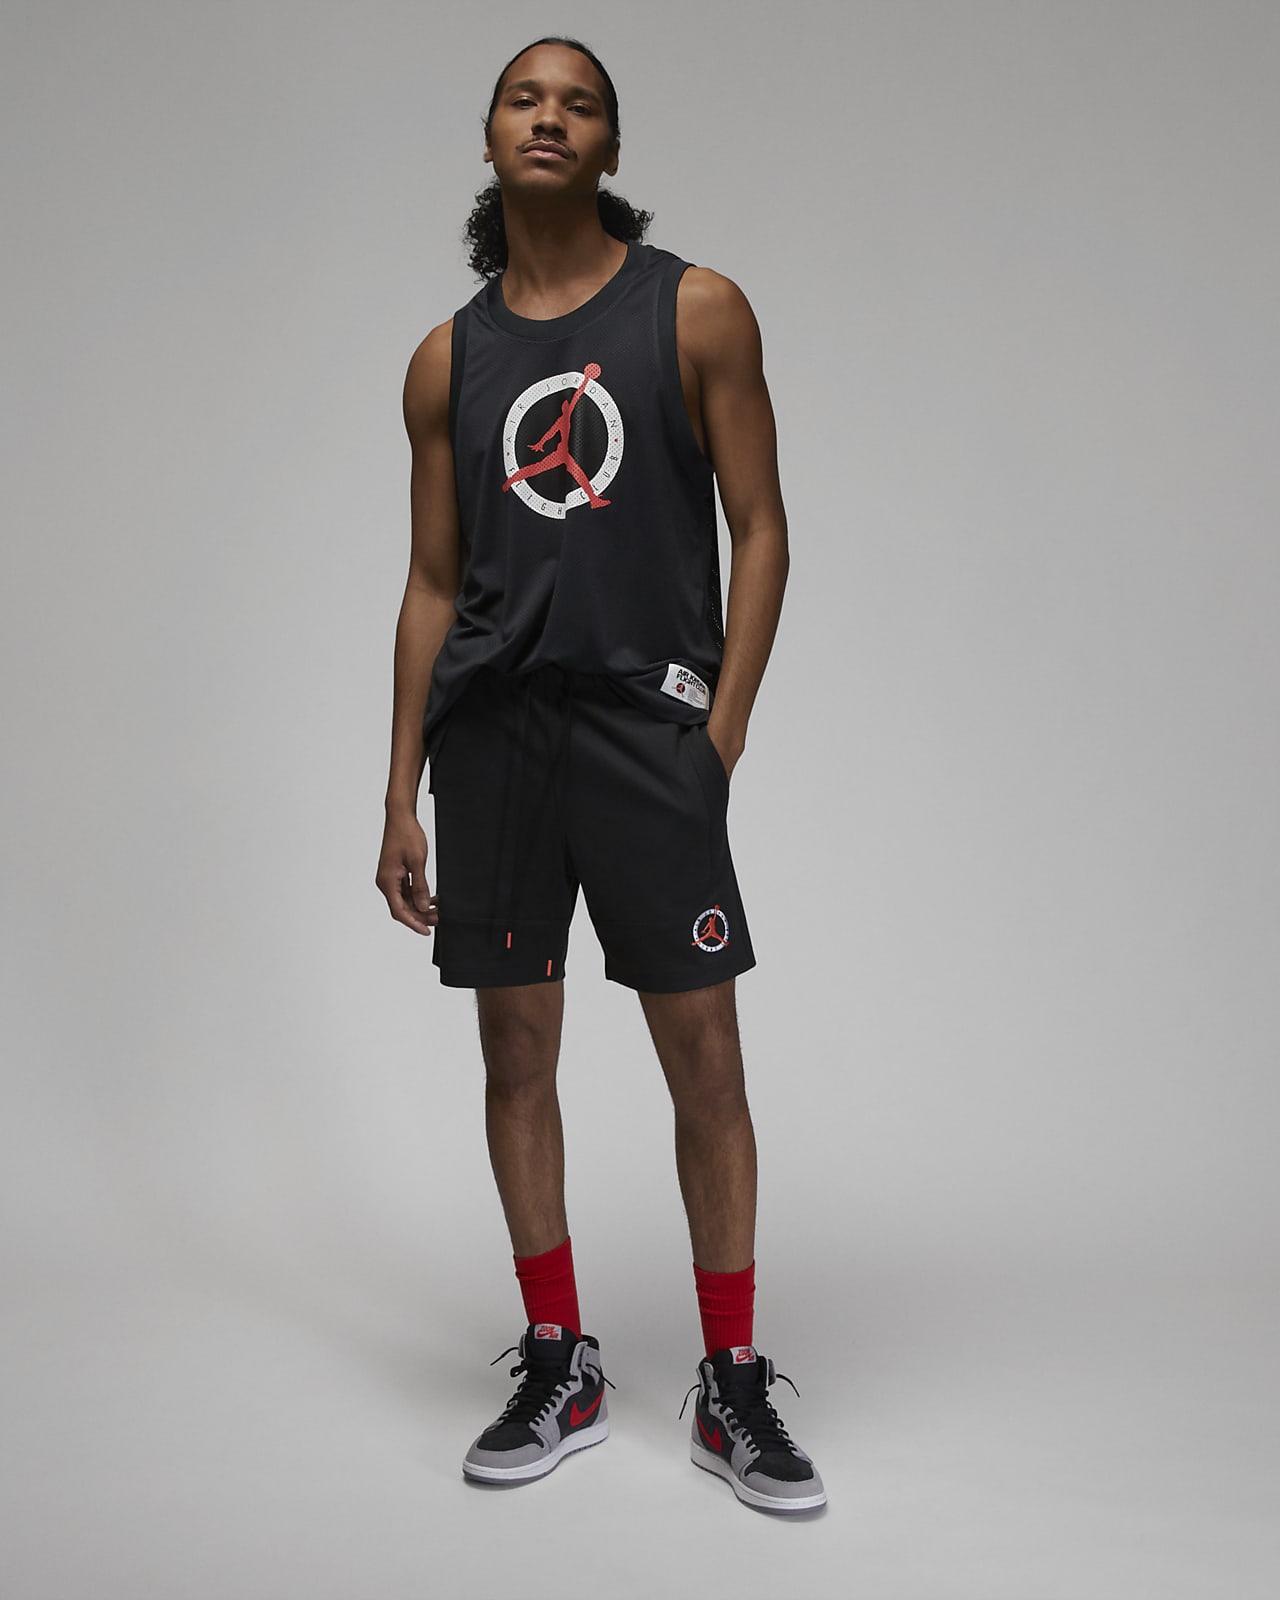 Air Jordan & Nike Size 4 Boys Shirt Shorts U PICK Short Sleeve Sleeveless